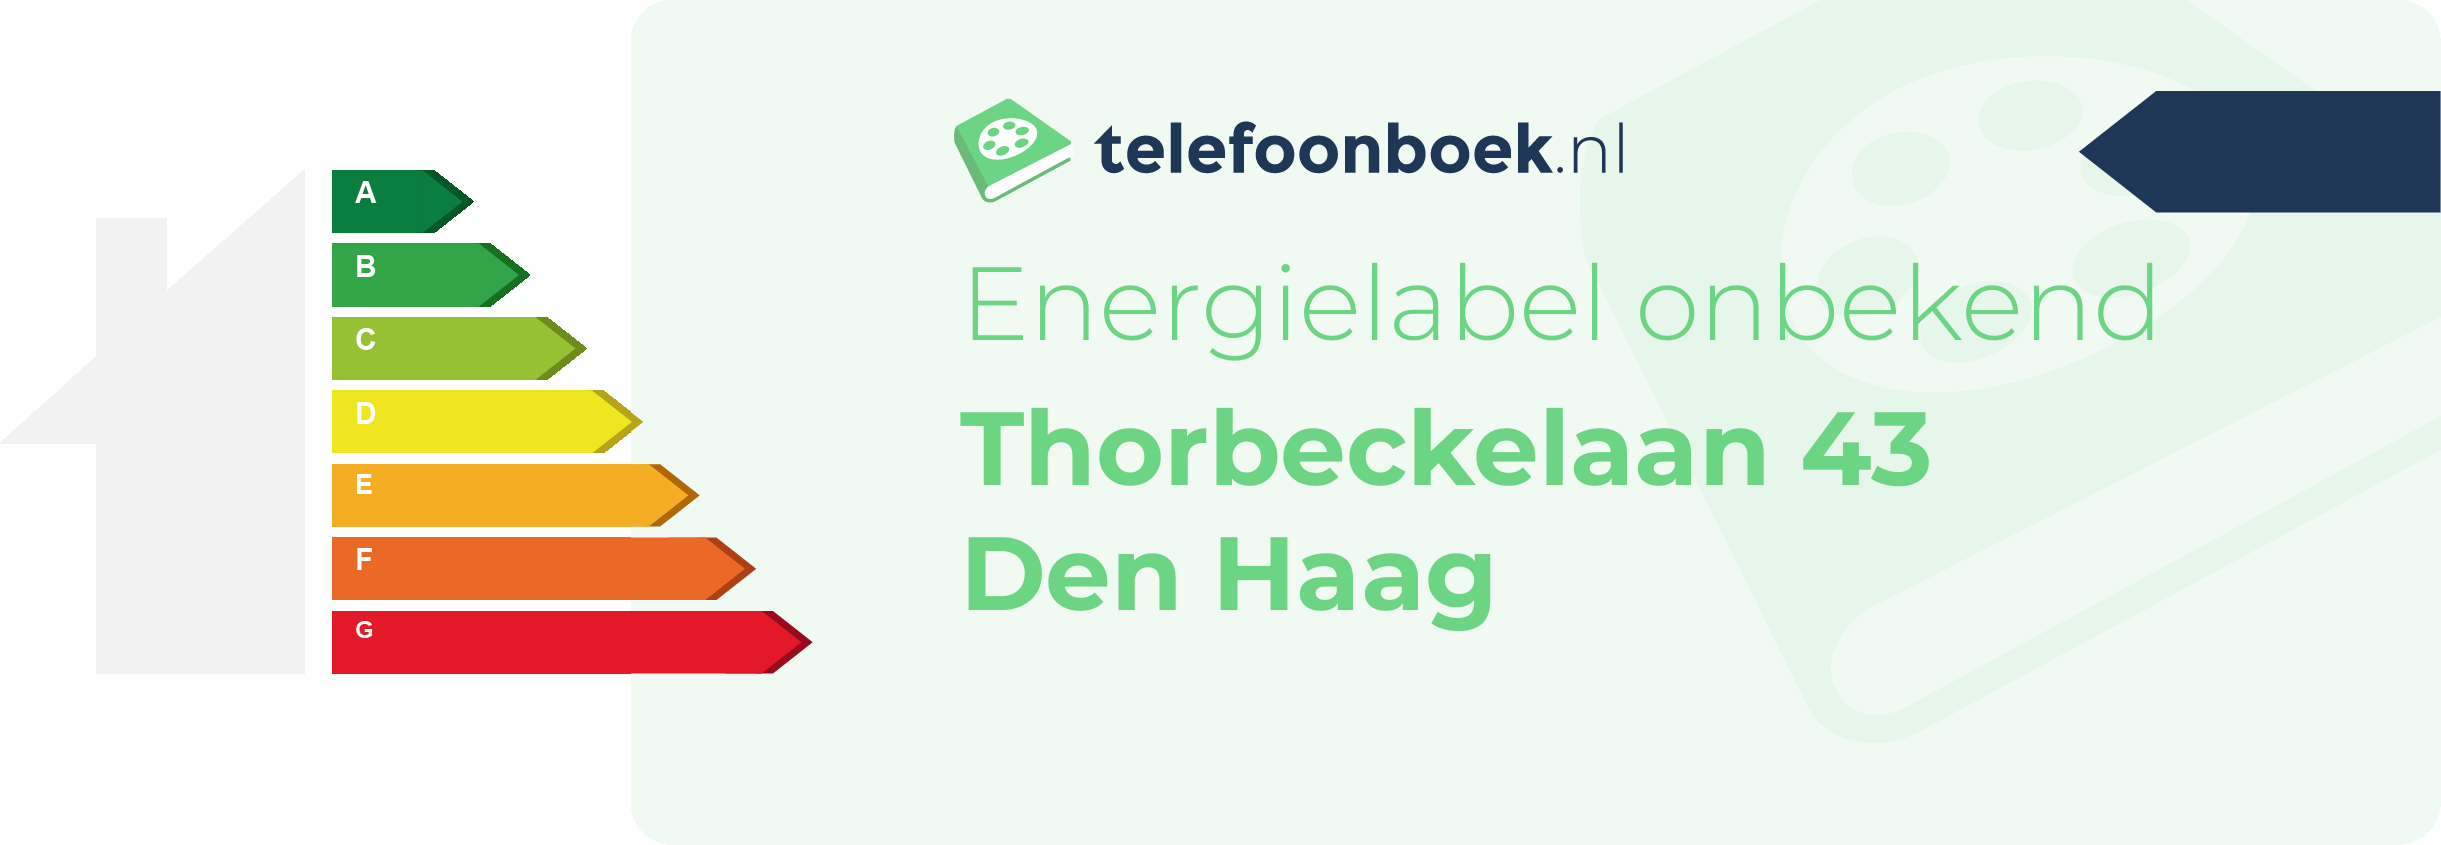 Energielabel Thorbeckelaan 43 Den Haag